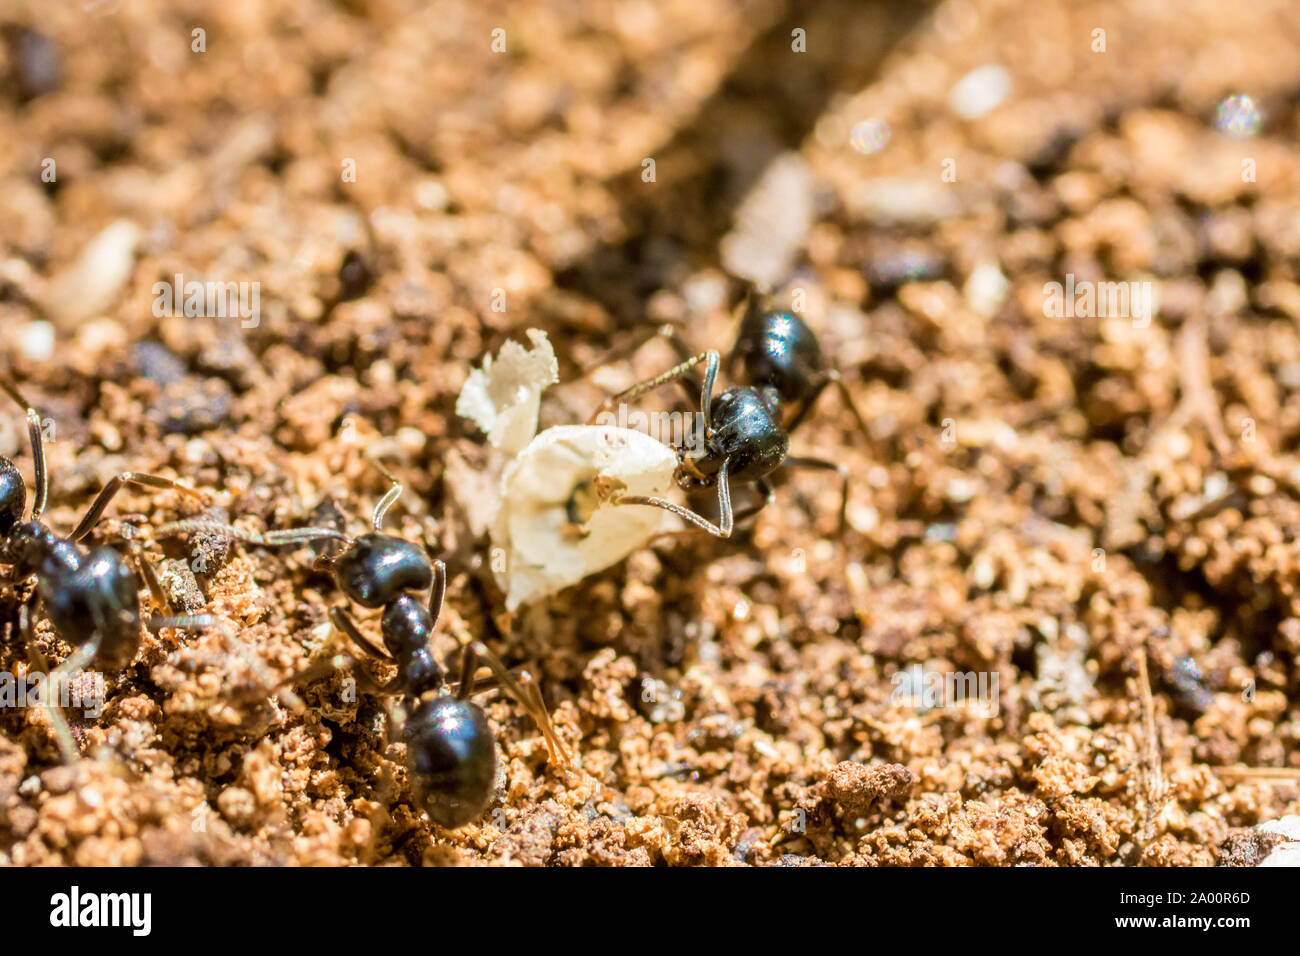 Ant en extreme closeup en el trabajo sobre el piso del bosque Foto de stock